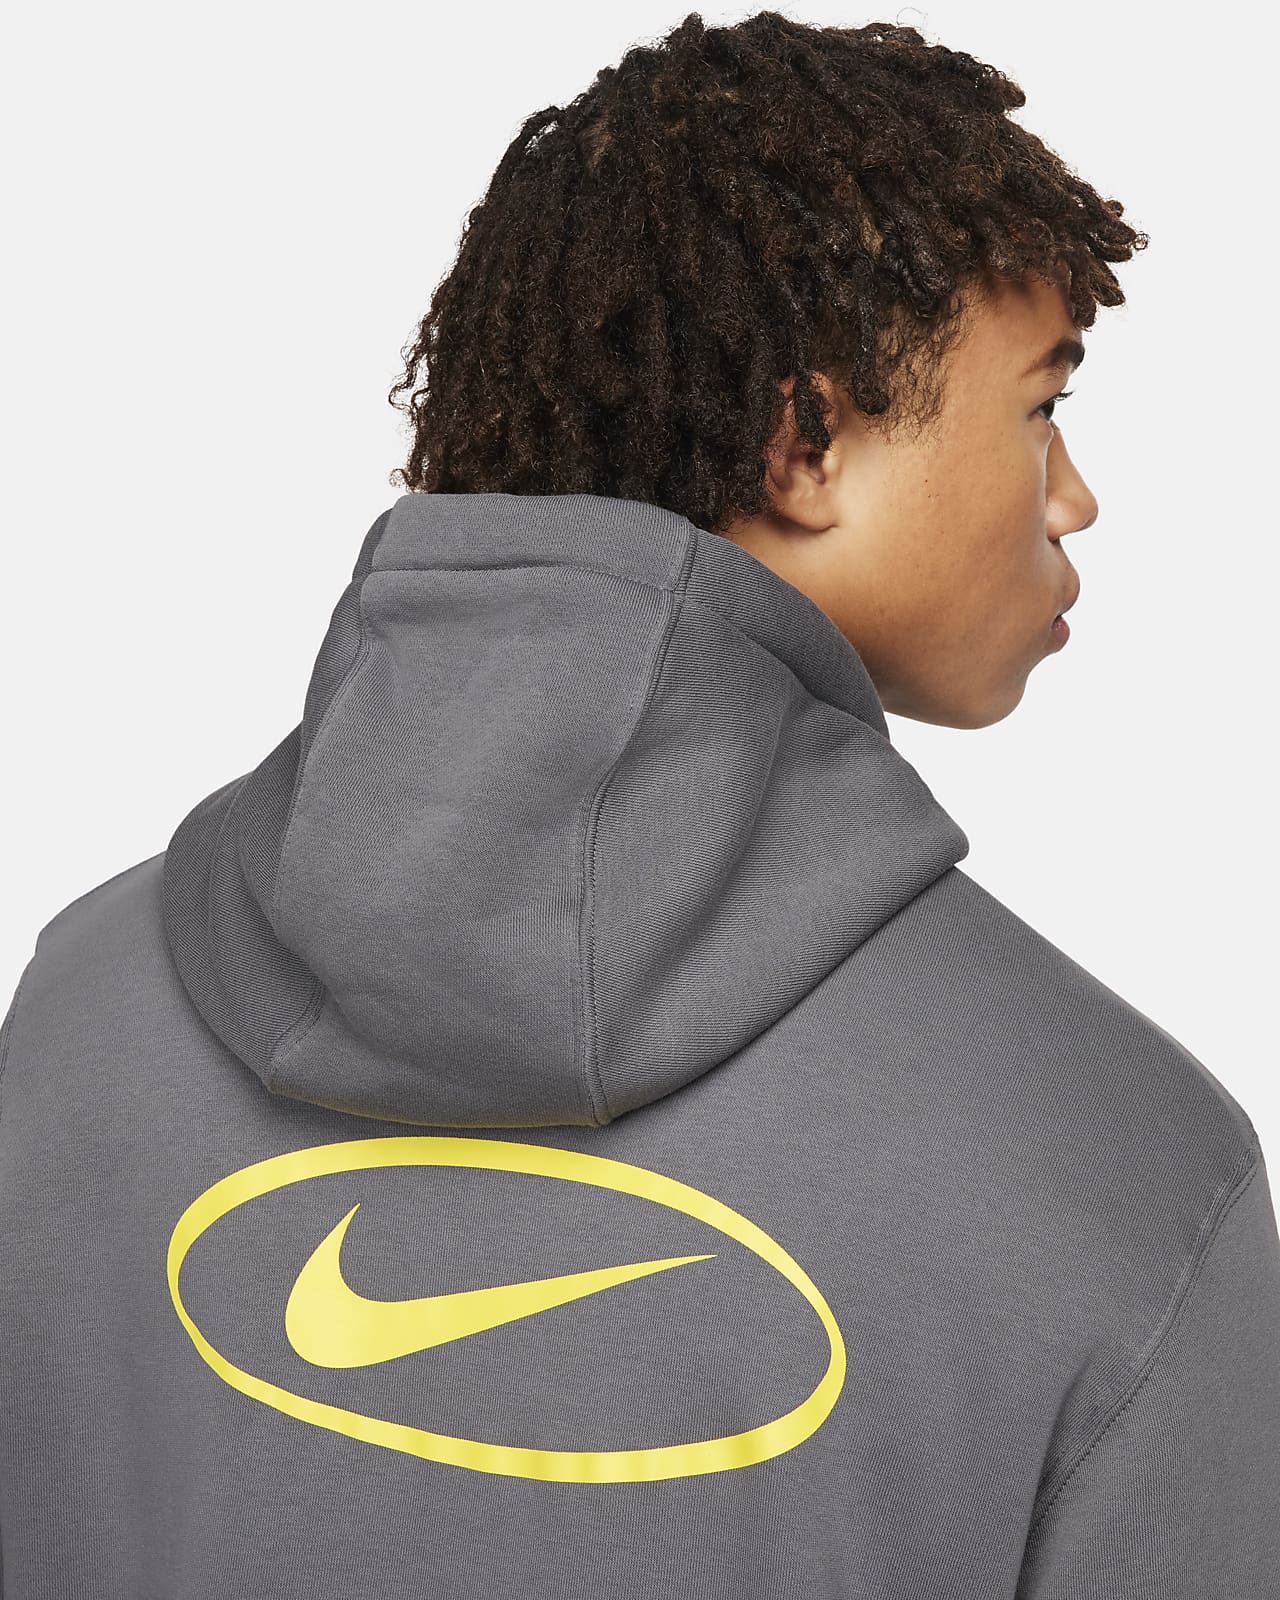 Grey Hoodies. Nike CA